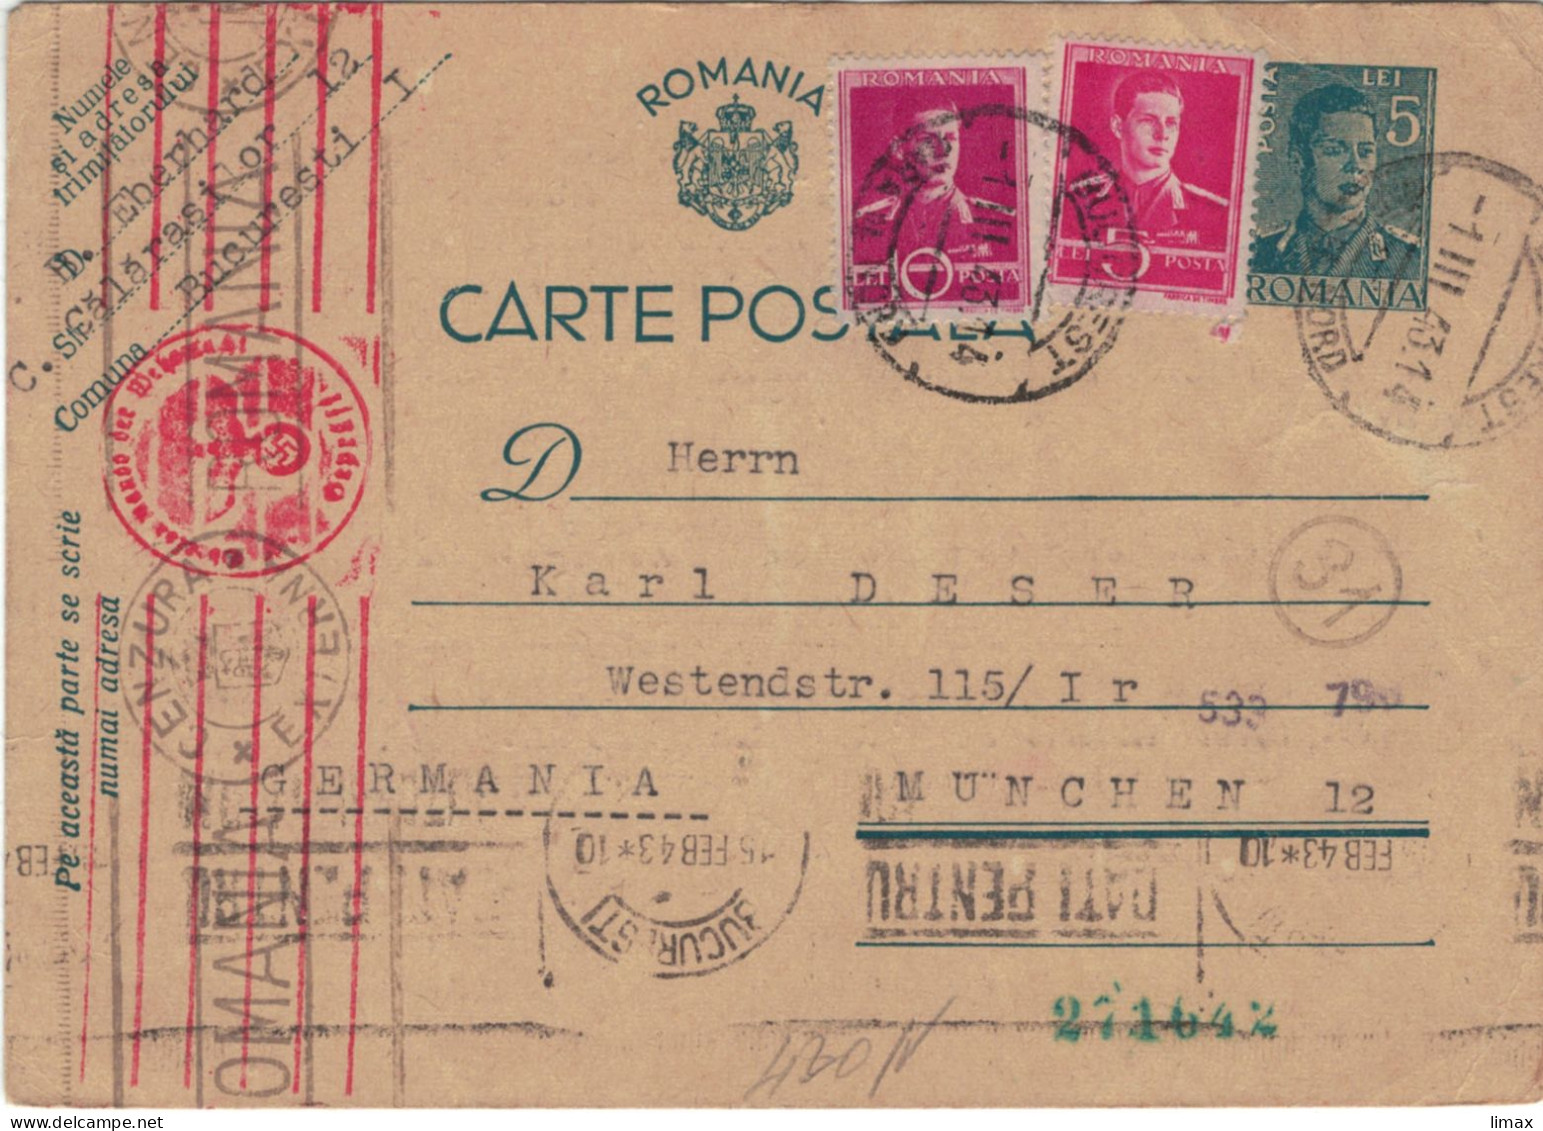 Ganzsache Bukarest 1.III.1943 > Karl Deser München - Zensur OKW Briefträgerstempel (31) - Storia Postale